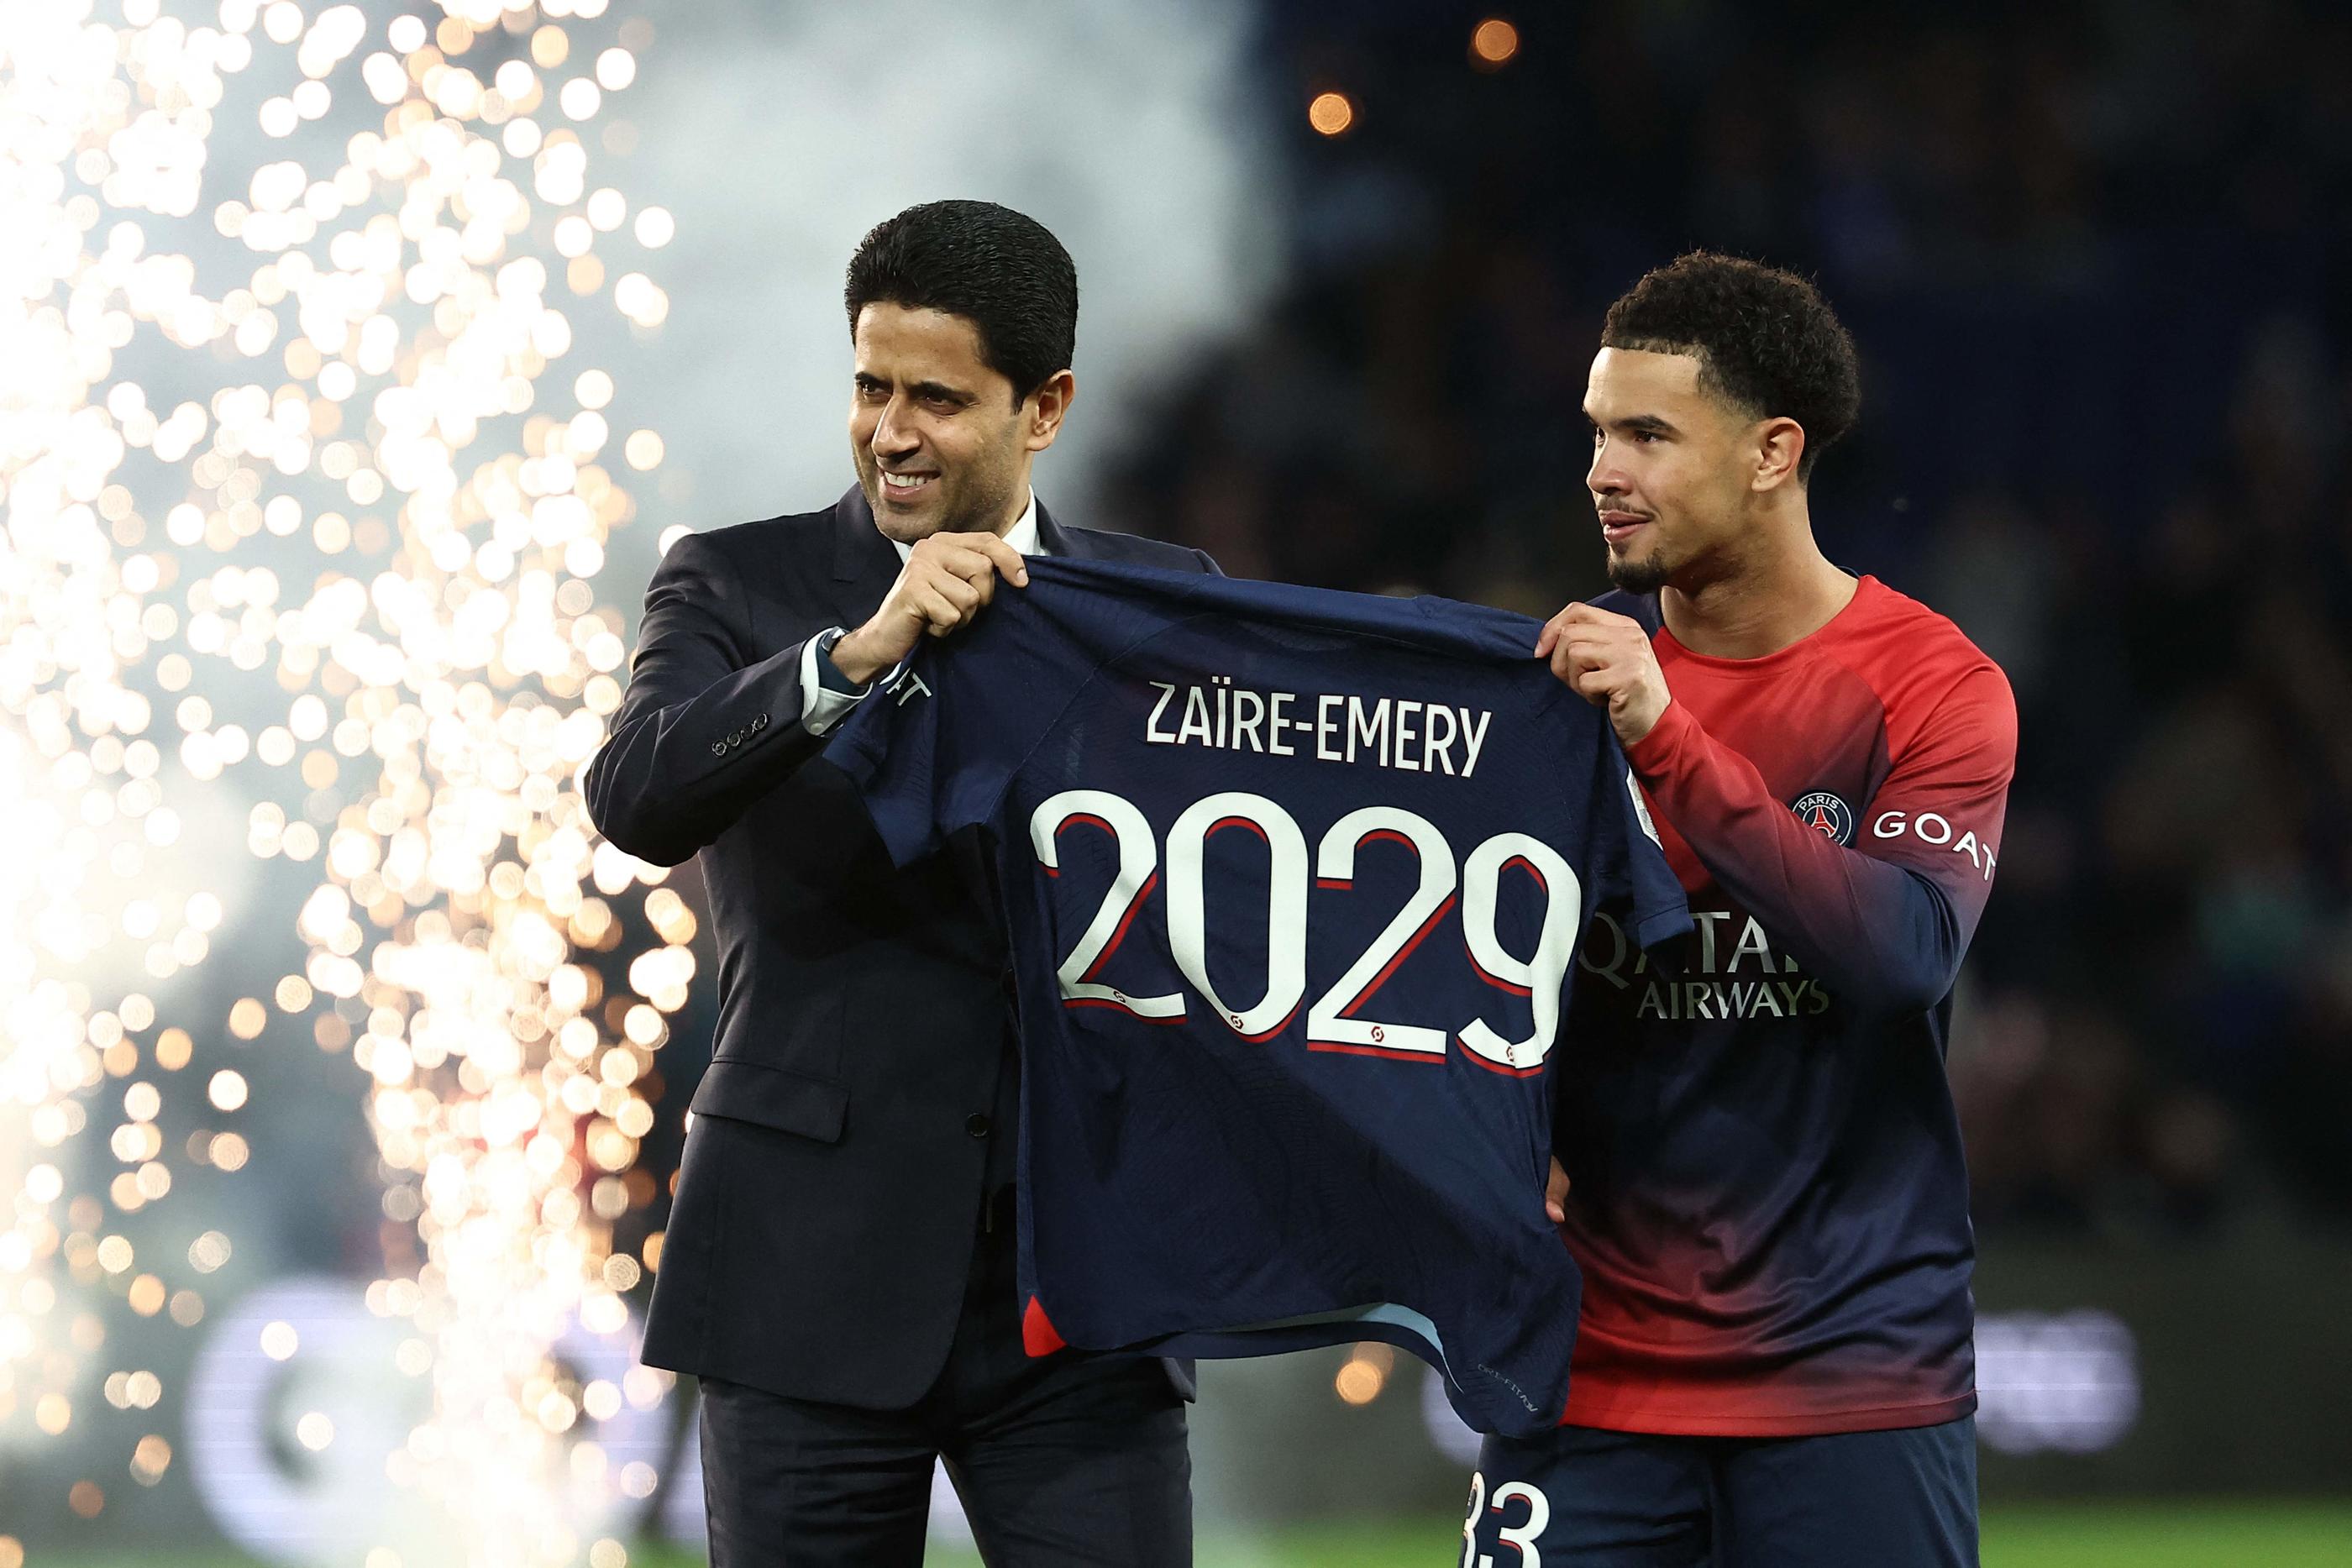 La prolongation de Warren Zaire-Emery a été annoncée avant le début du match face au Havre au parc des Princes. (Photo by FRANCK FIFE / AFP)